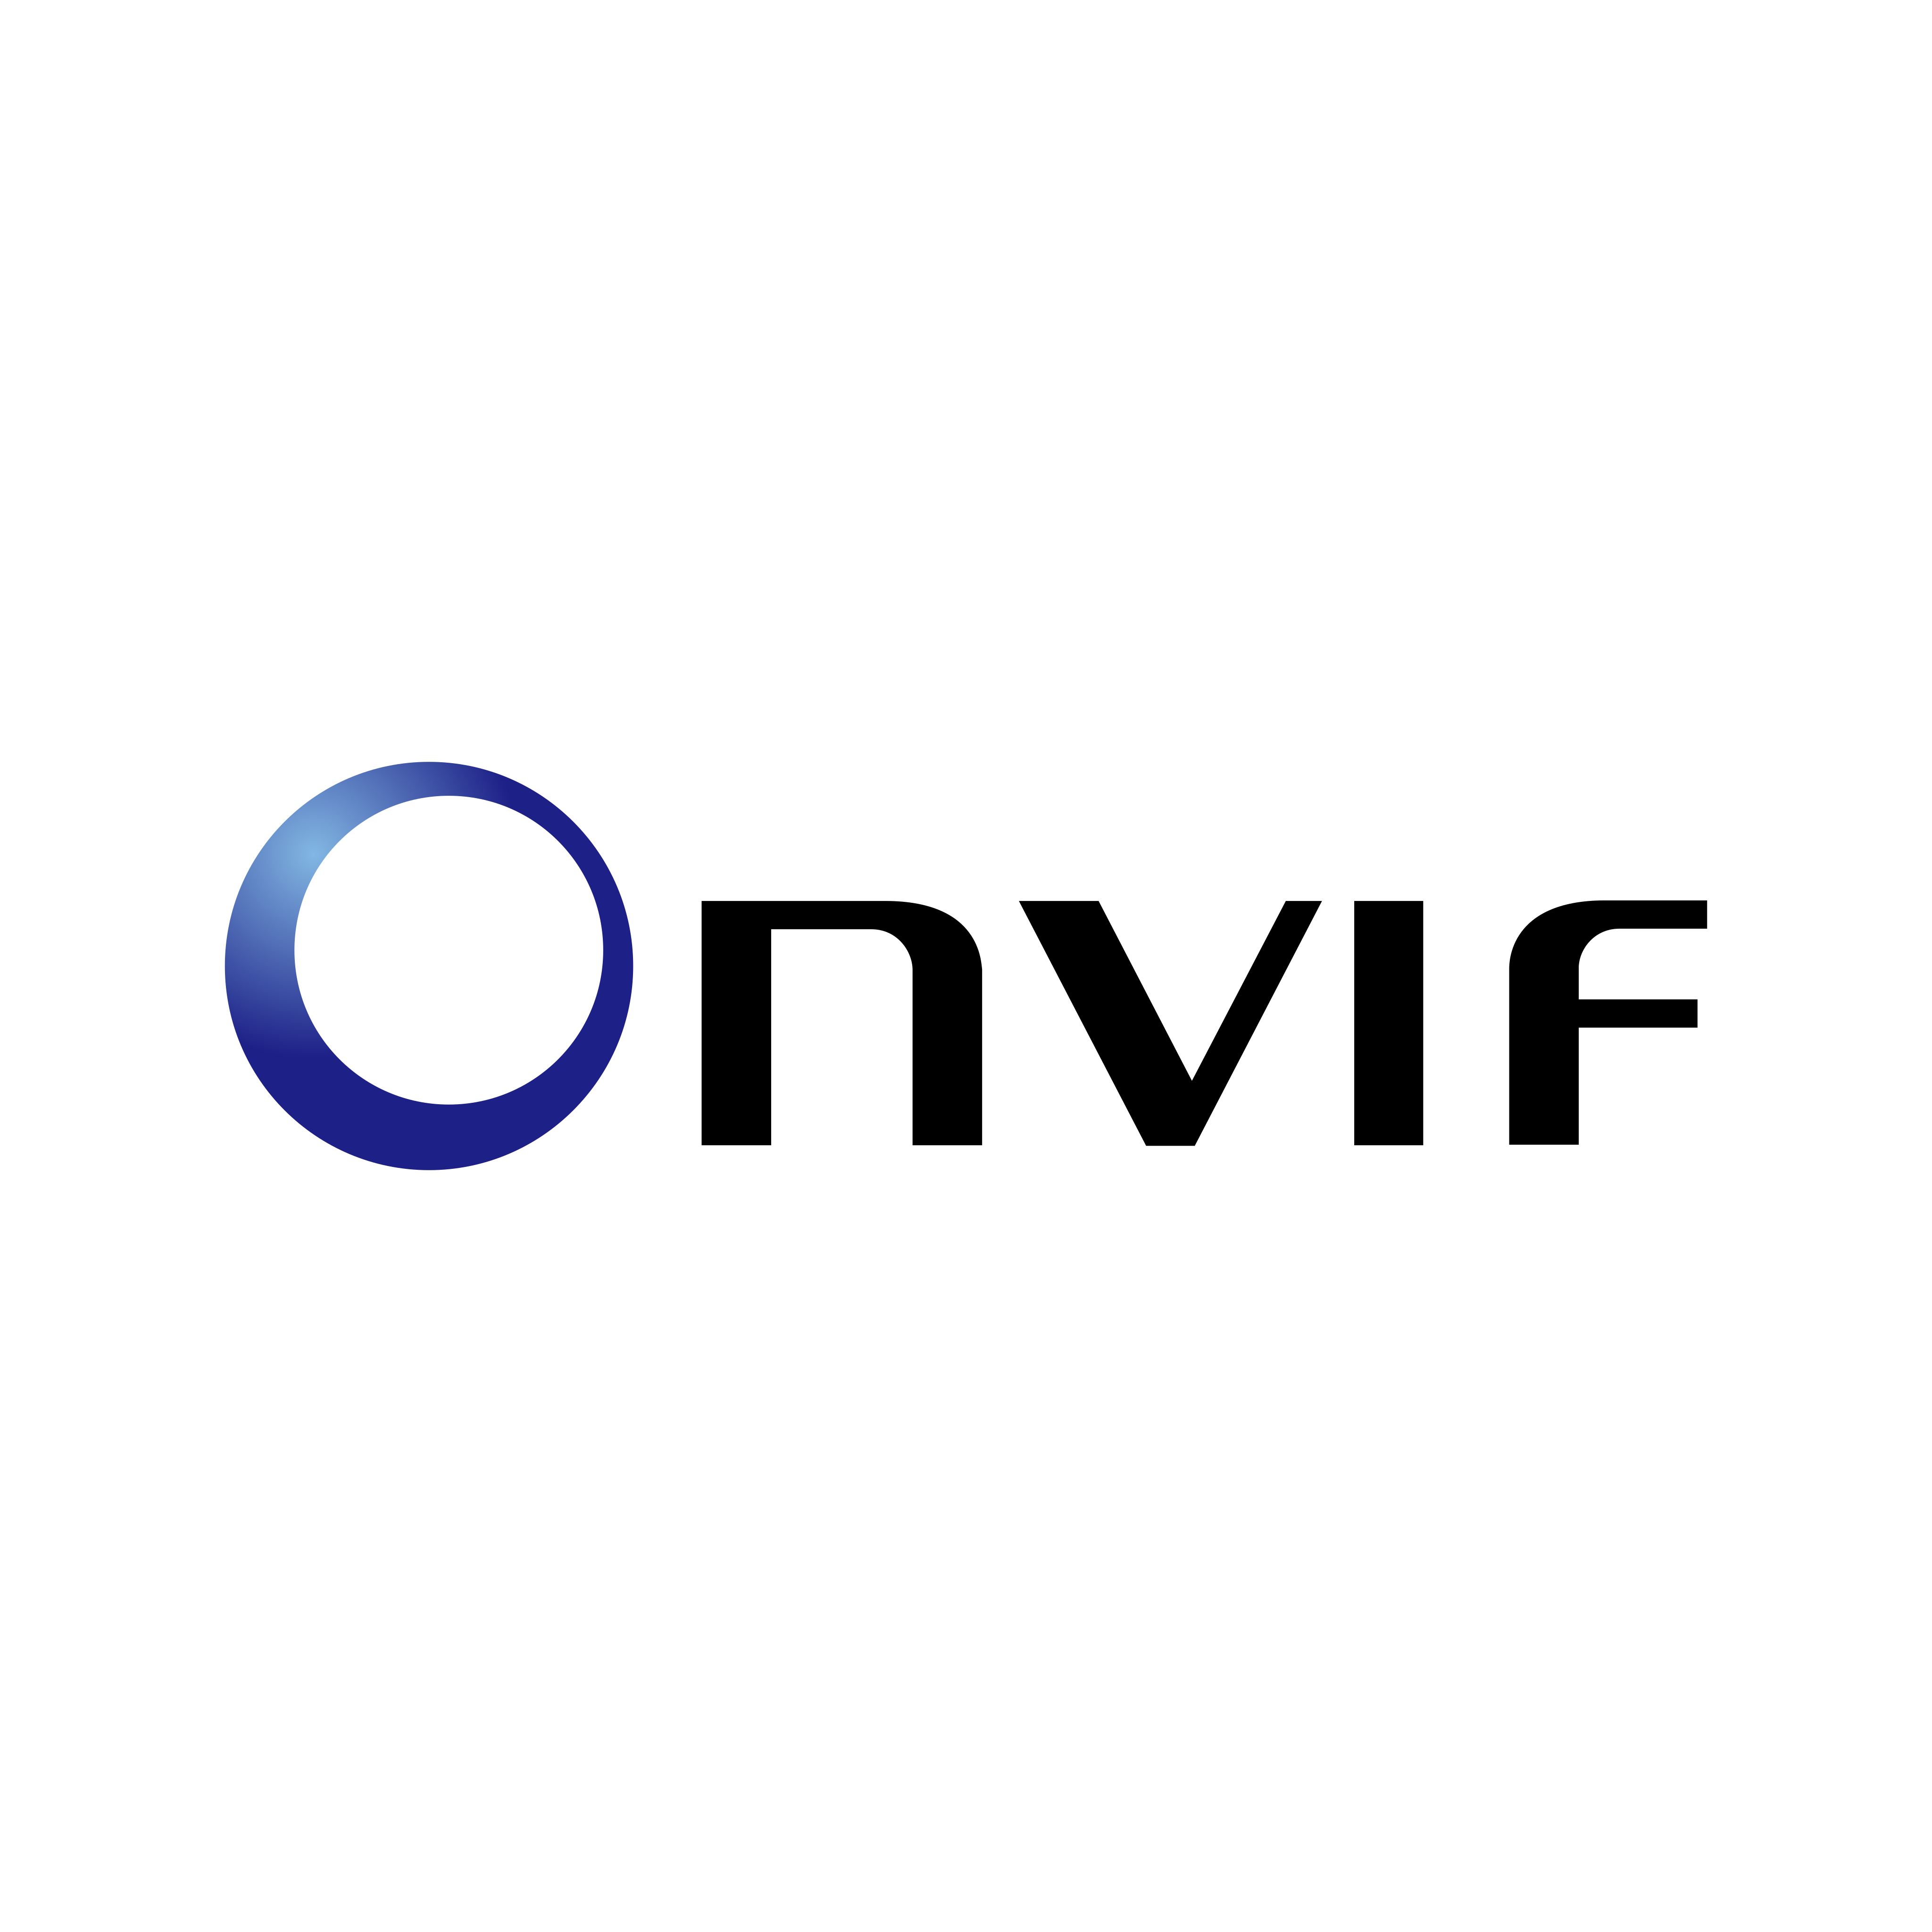 onvif logo 0 - Onvif Logo